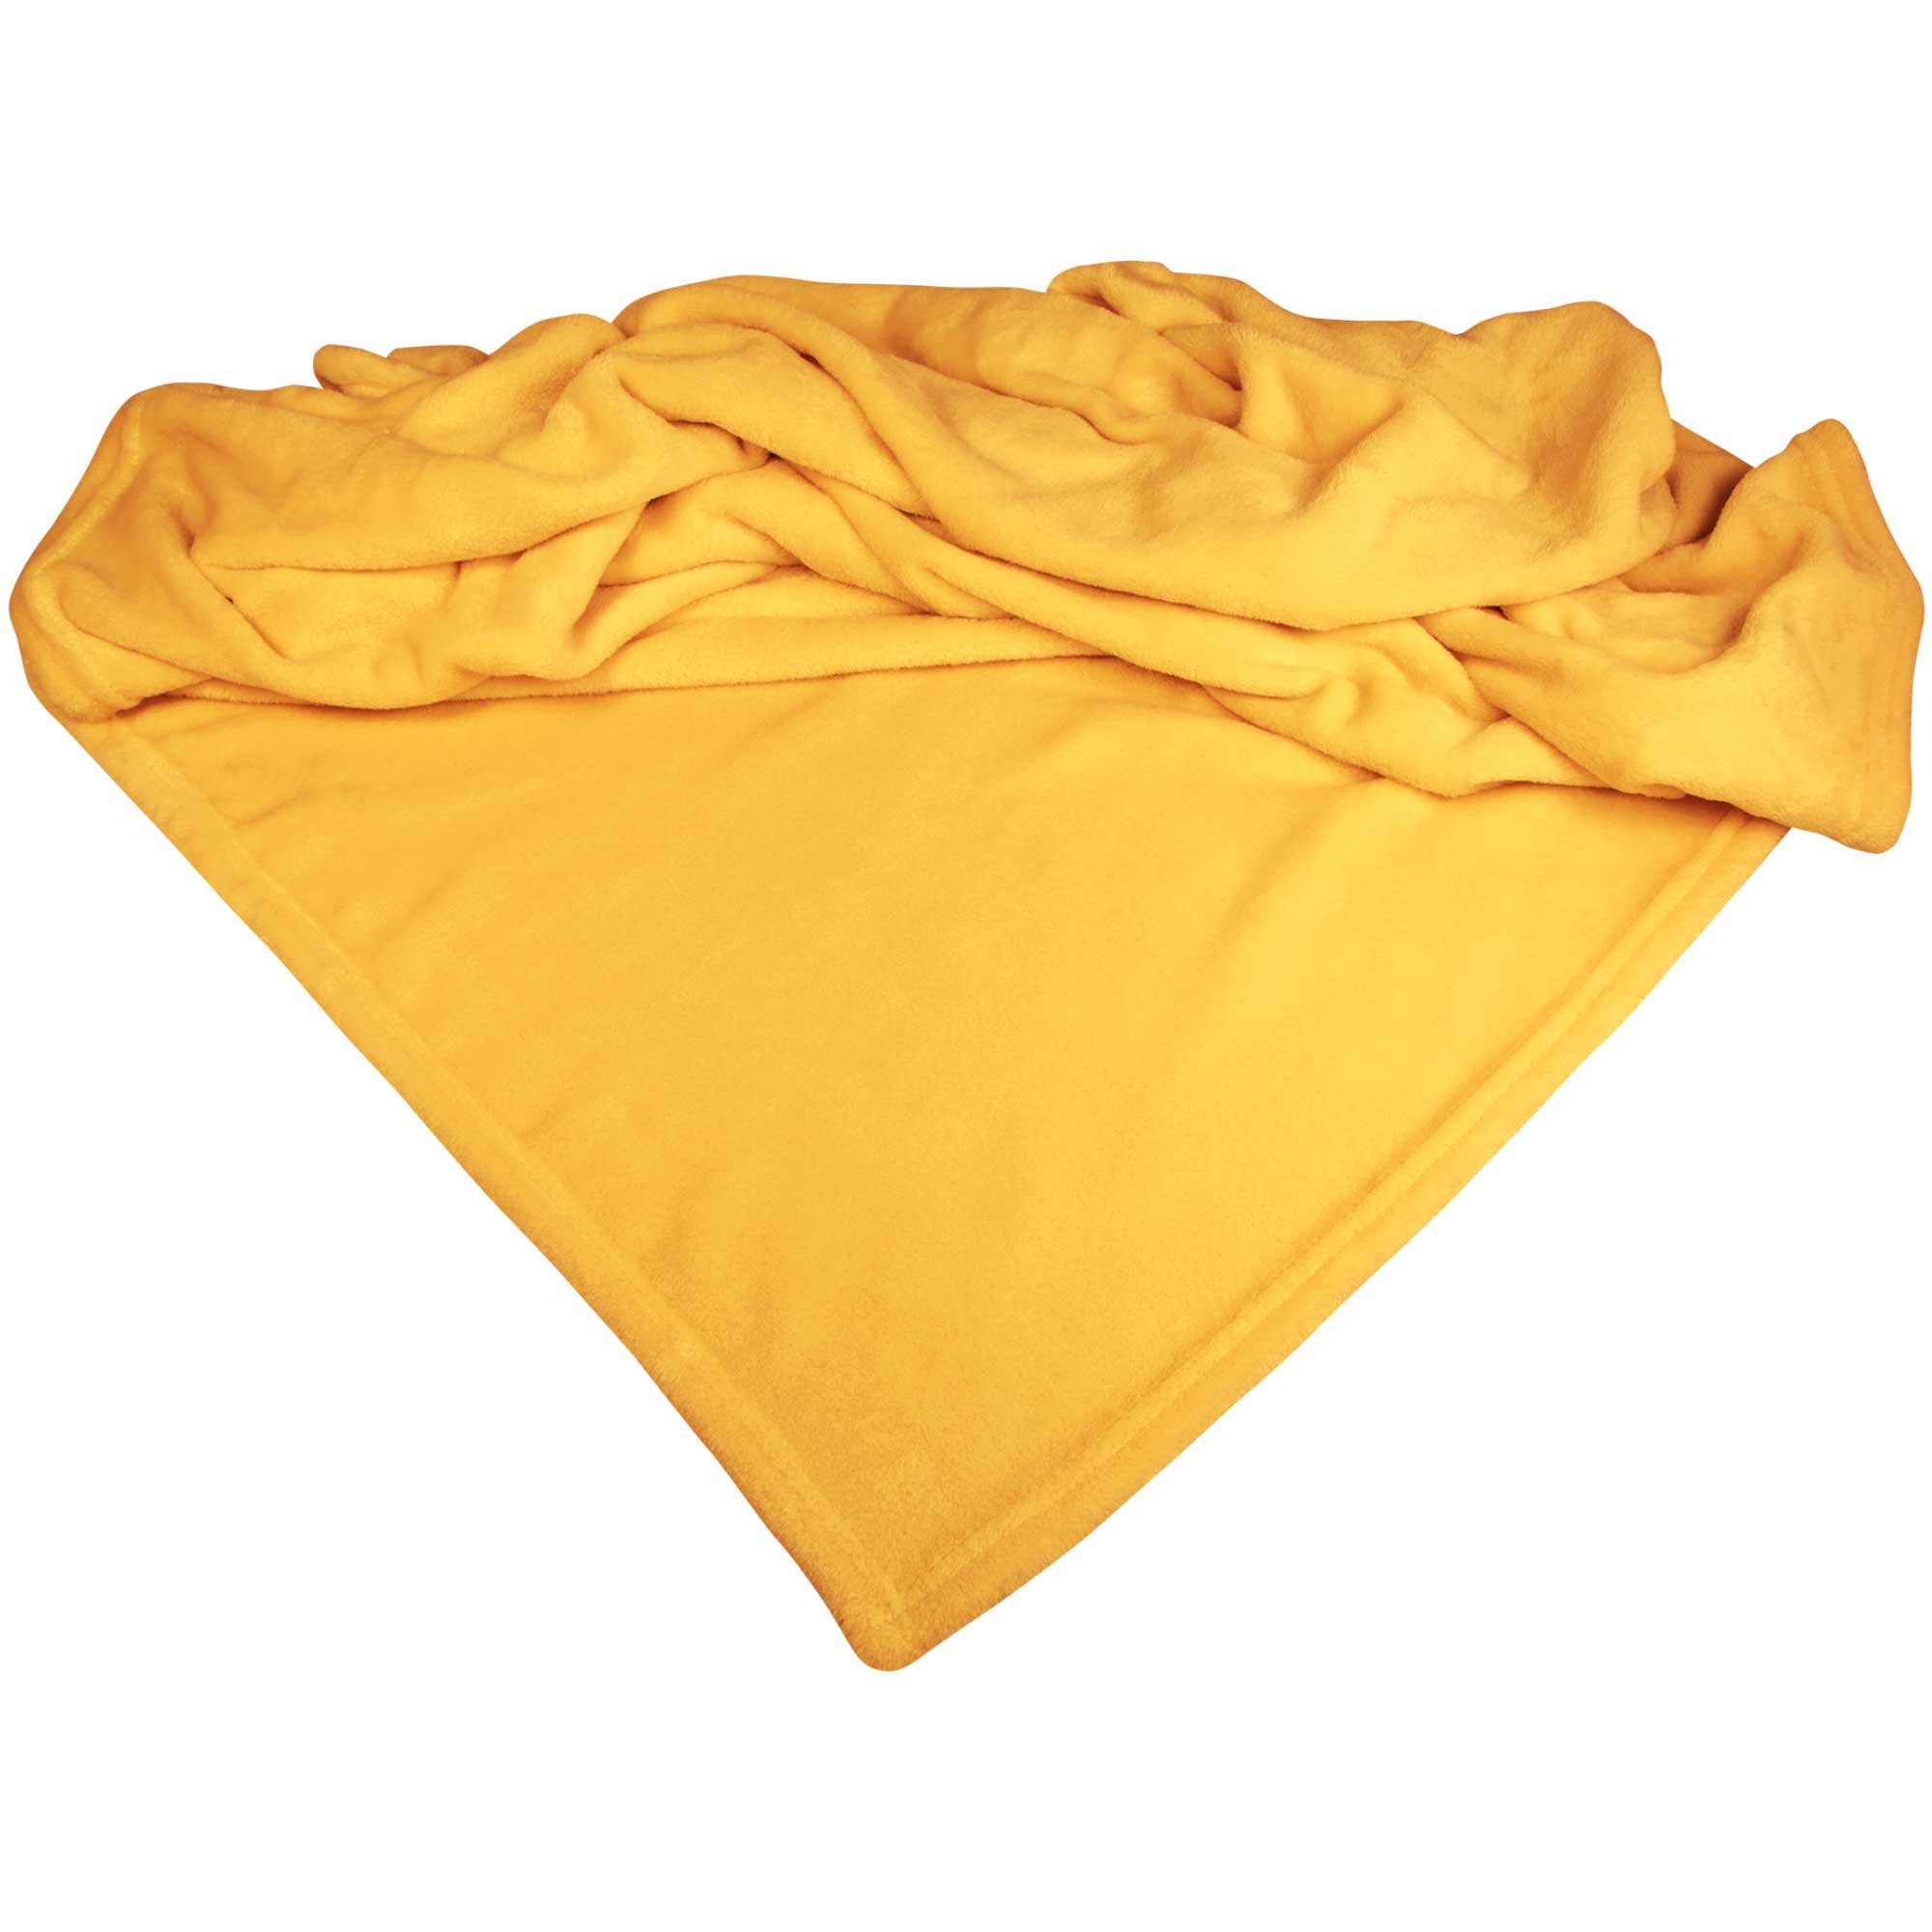 Sofaschoner Mikrofaserdecke Premium für den Hund Schecker, Bis 60°C waschbar Gelb